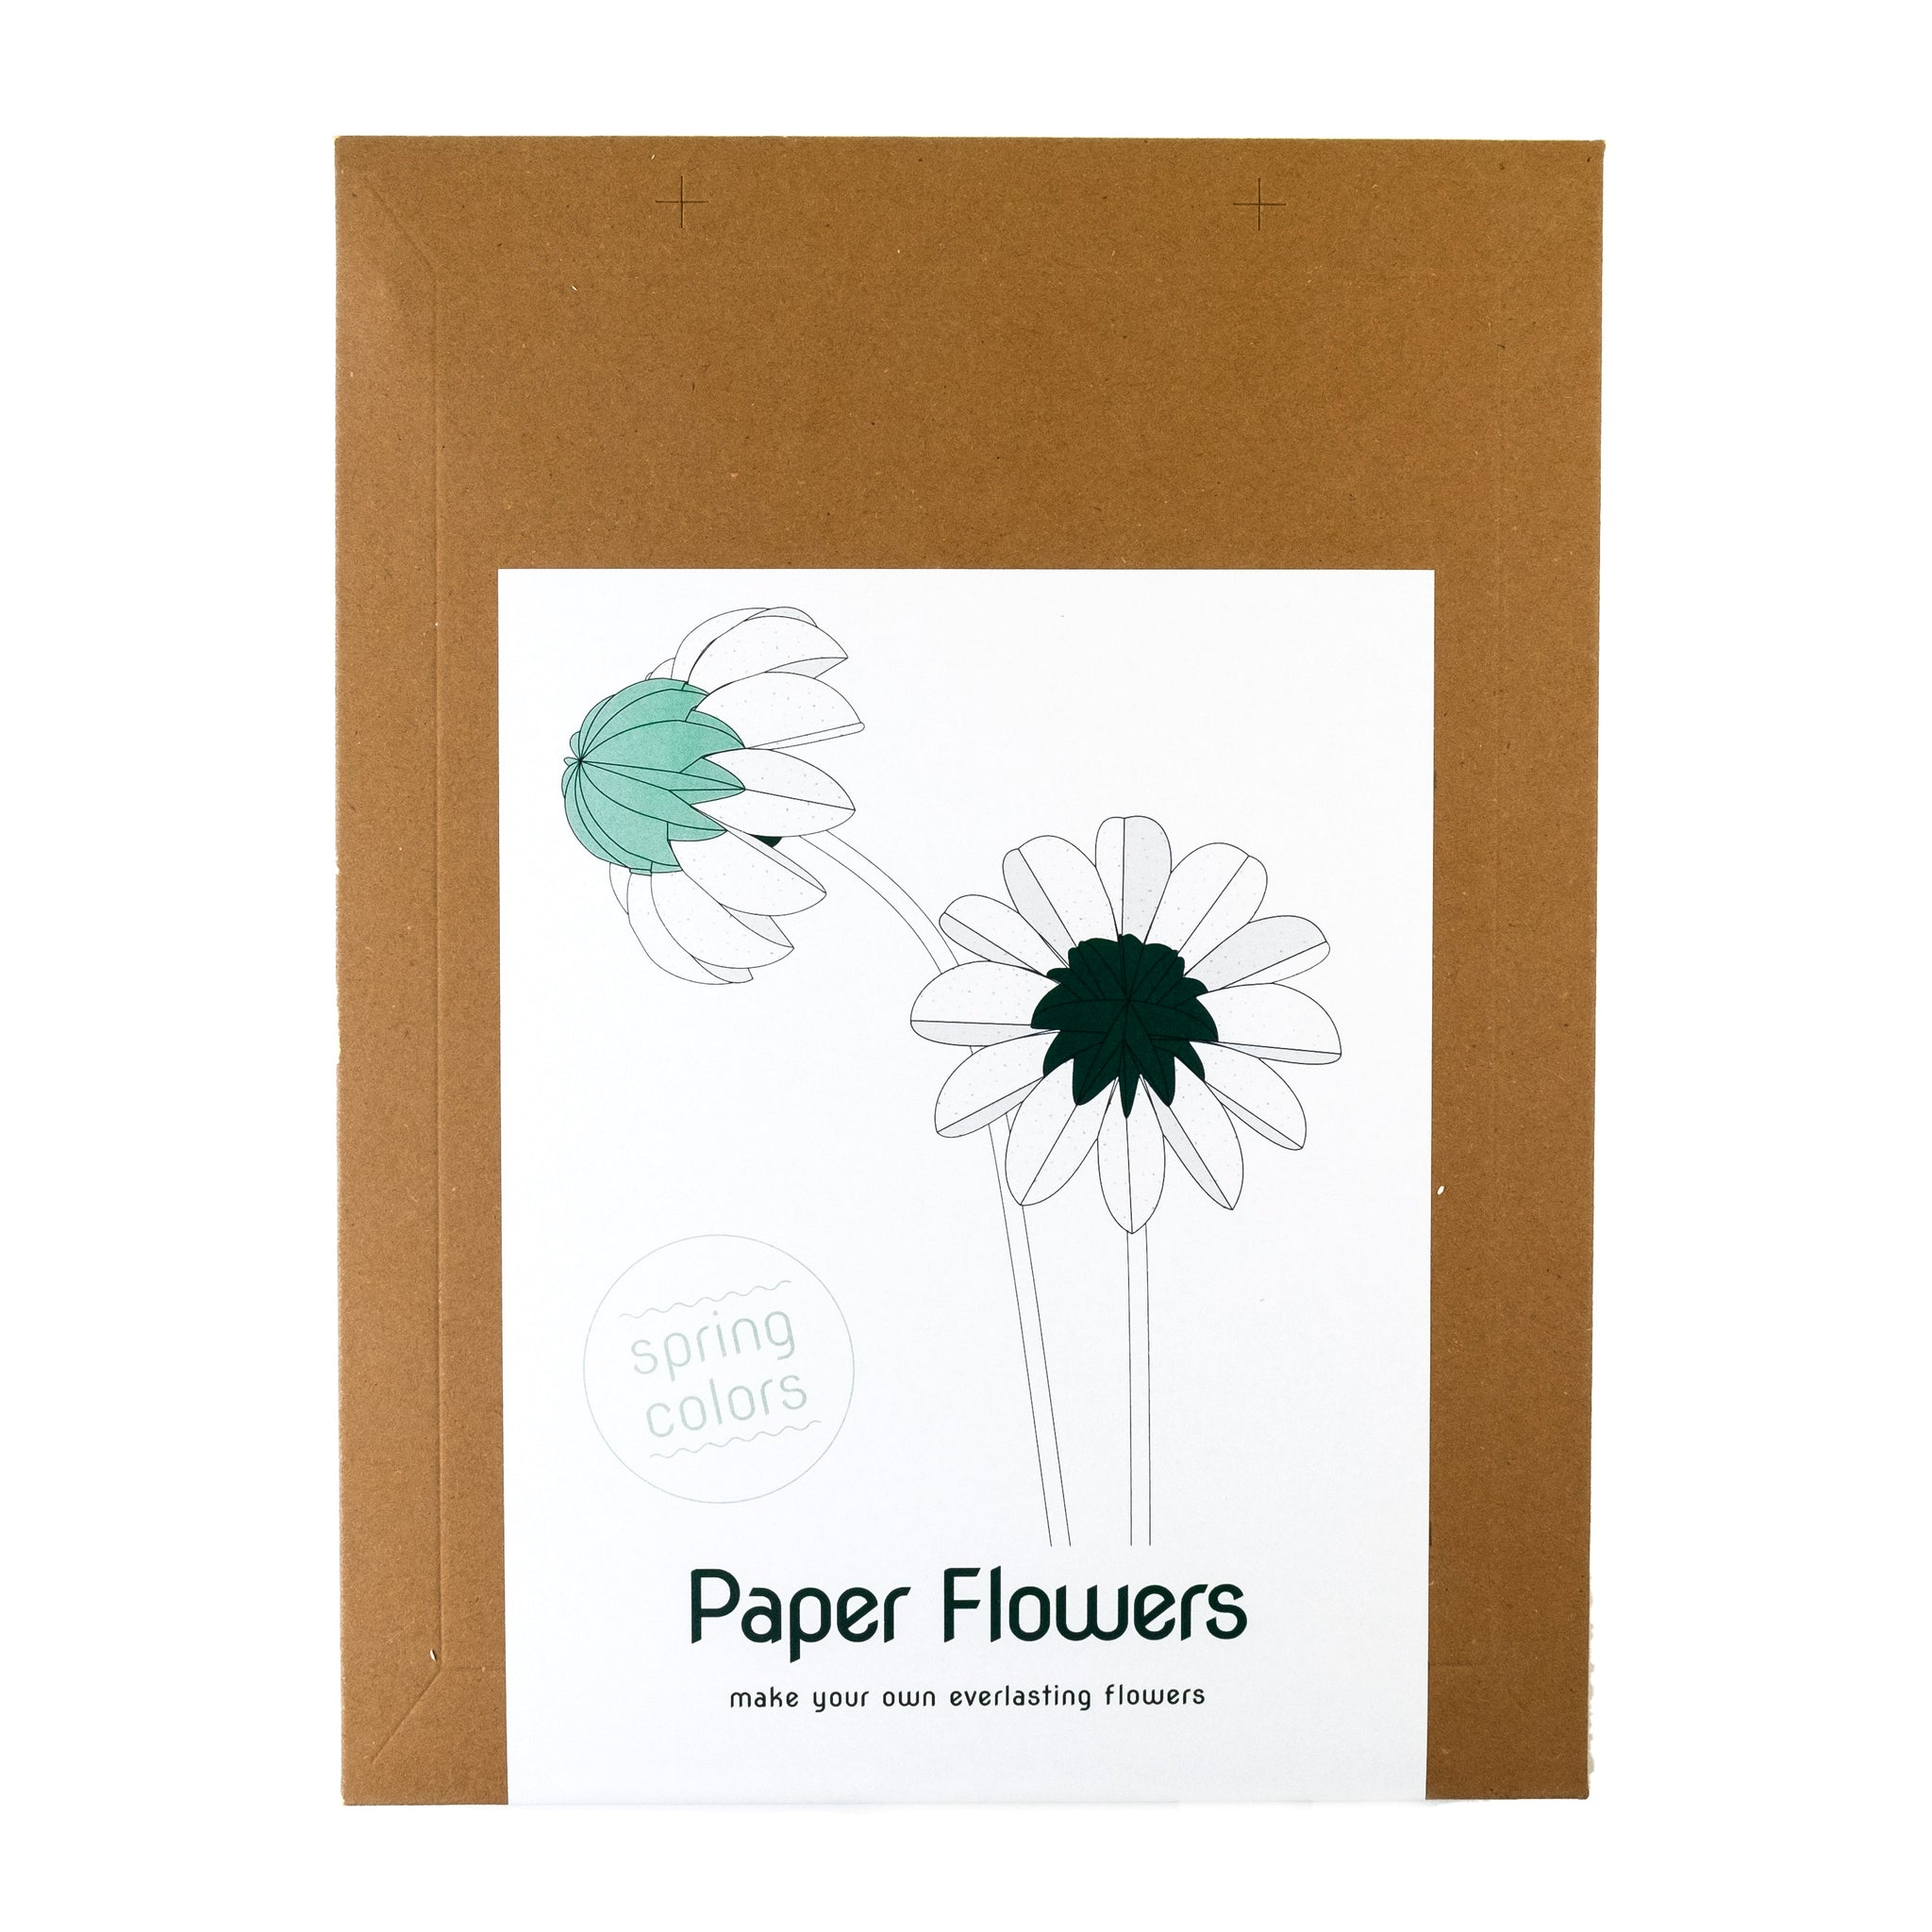 Paper Flowers Lente│Jorine Oosterhoff│Papieren Bloemen│verpakking